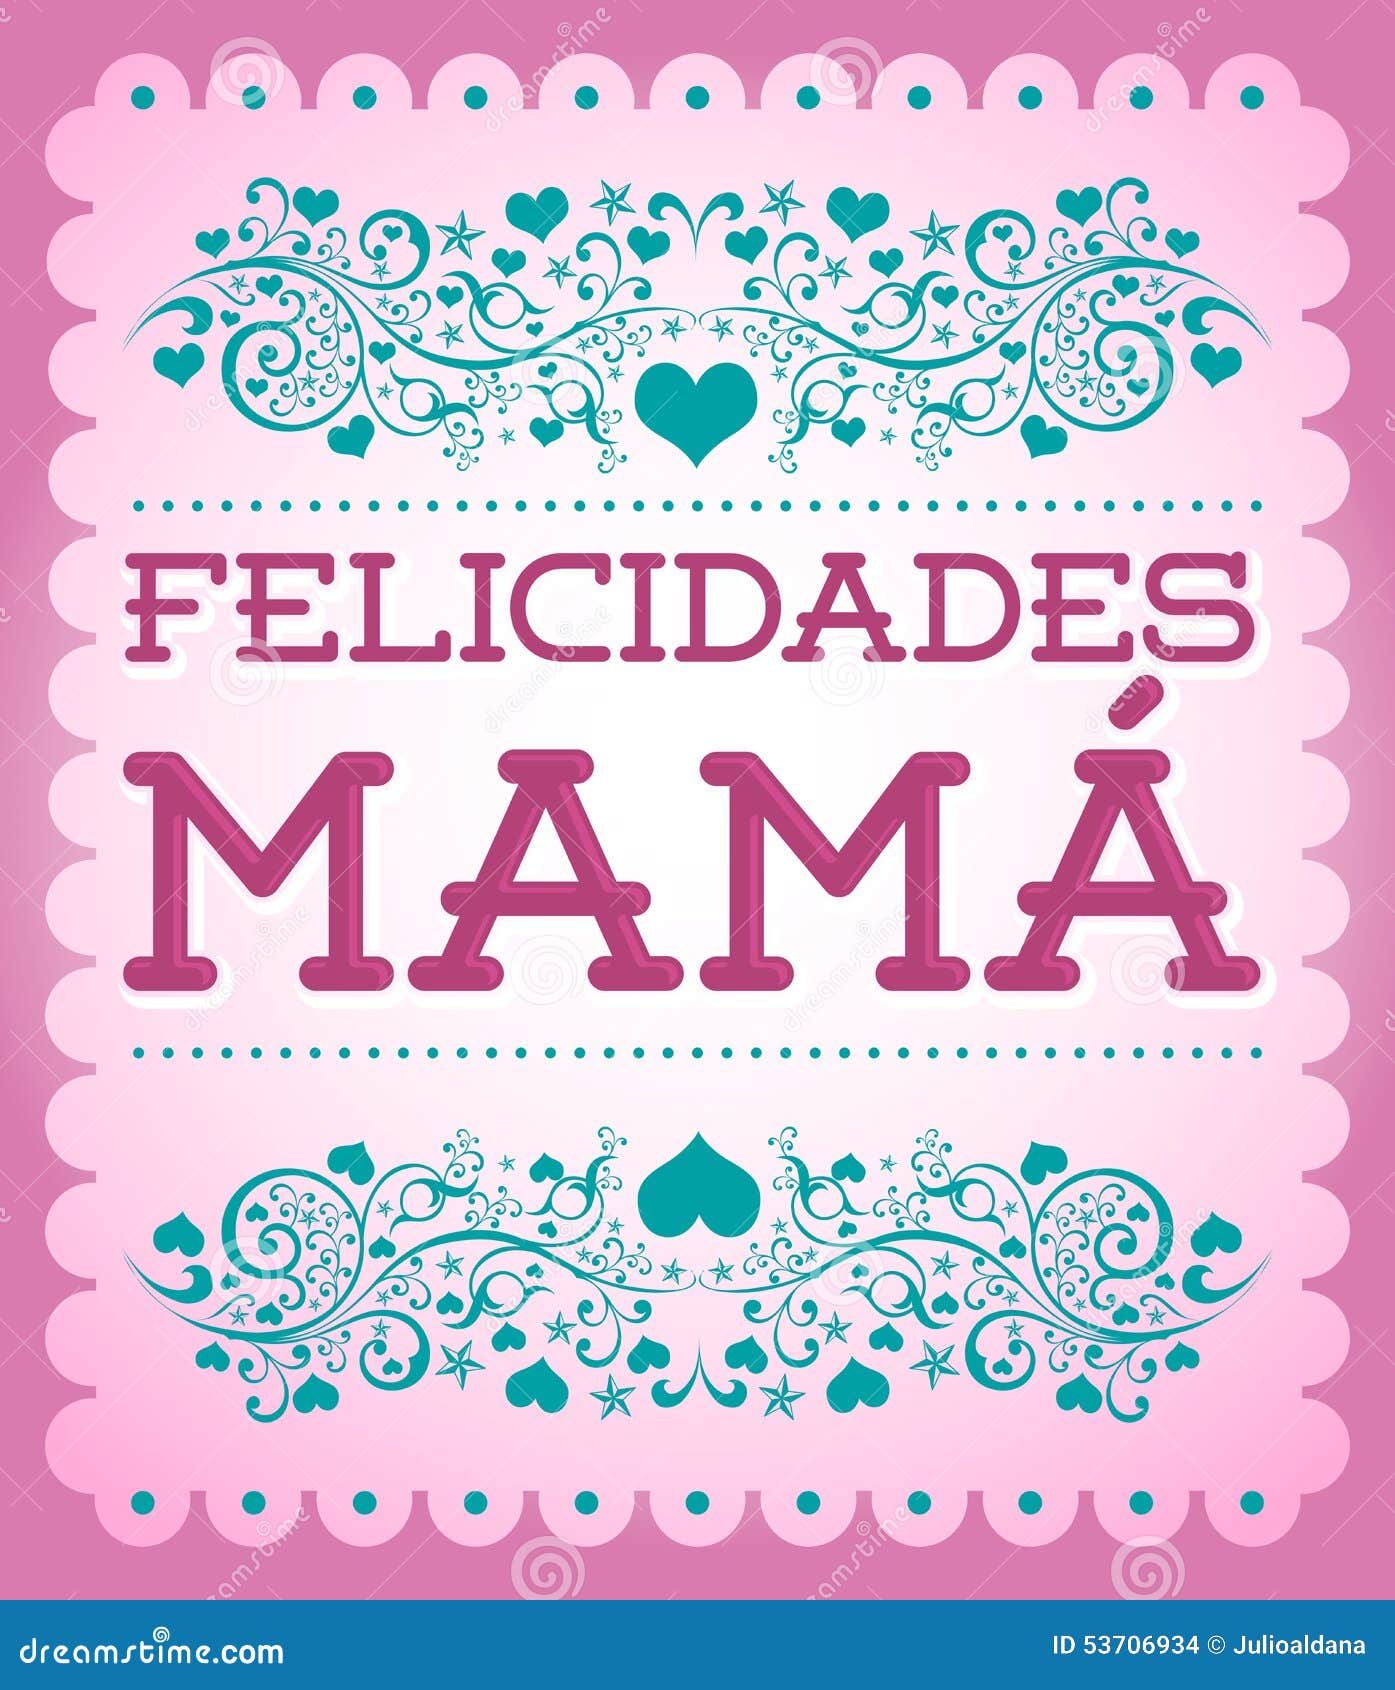 felicidades mama, congrats mother spanish text